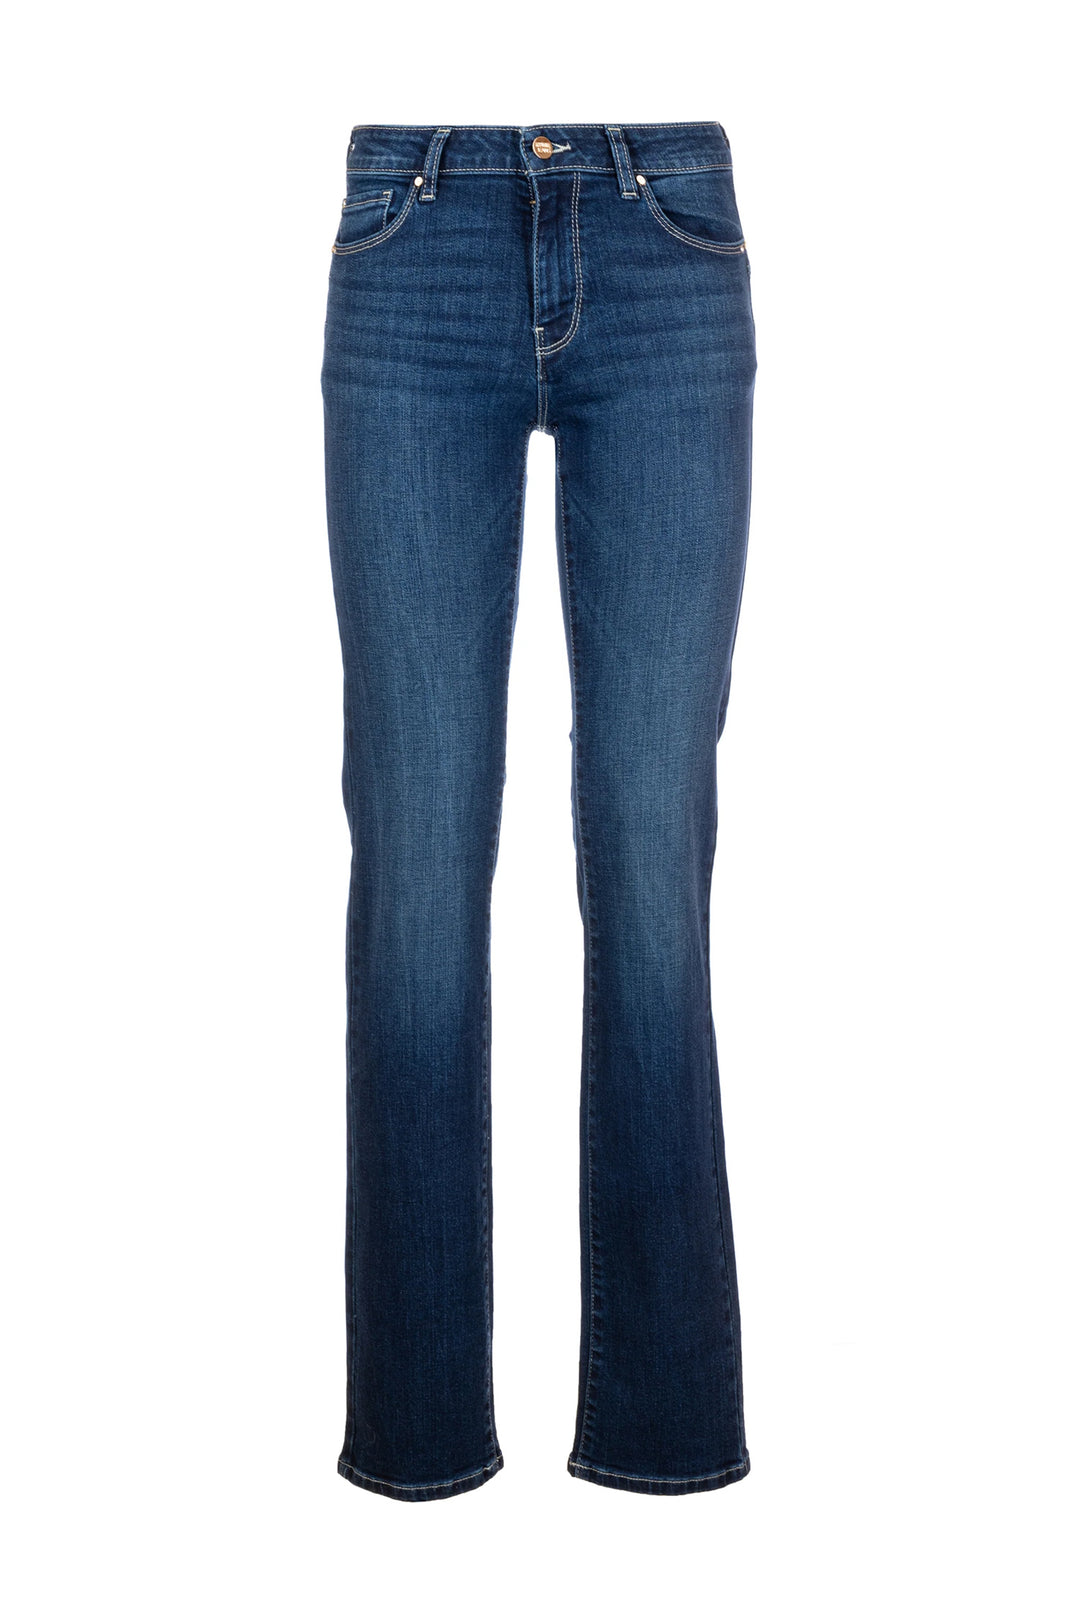 FRACOMINA Jeans flare effetto push up in denim con lavaggio medio - Mancinelli 1954